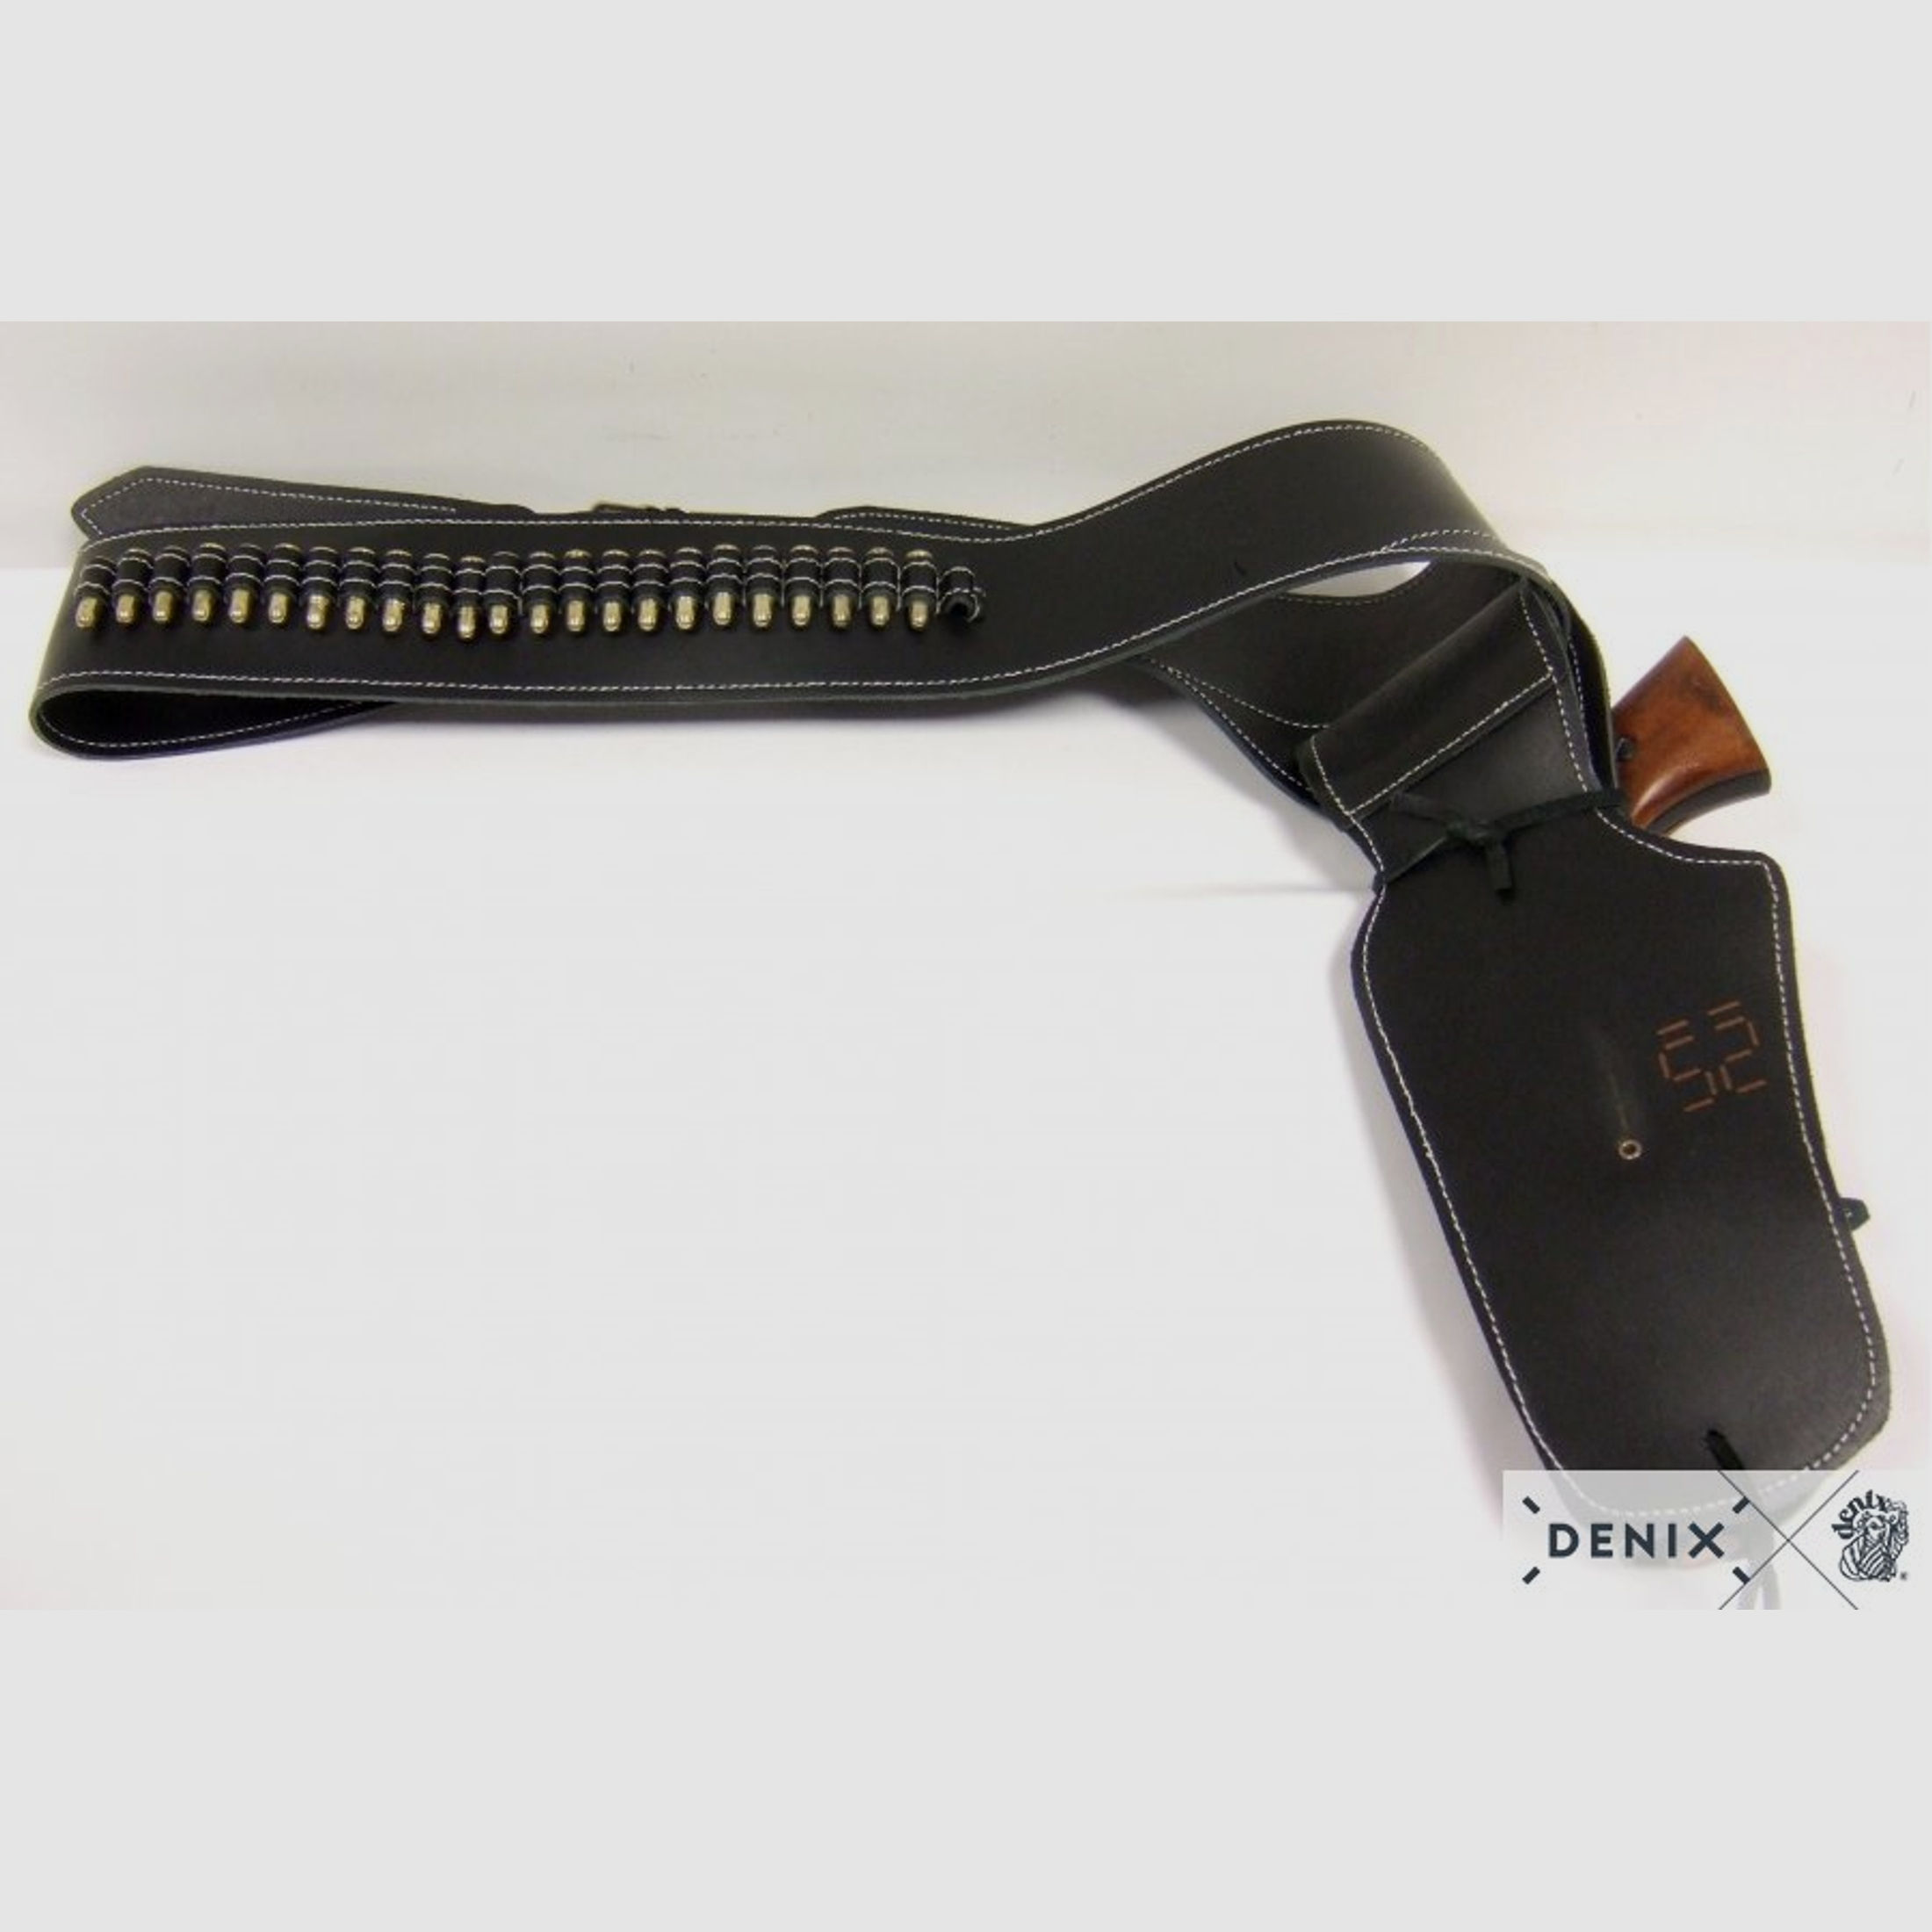 Coltgürtel aus Leder, für 1 Colt, inklusive 24 Kugeln, punziert | 88648